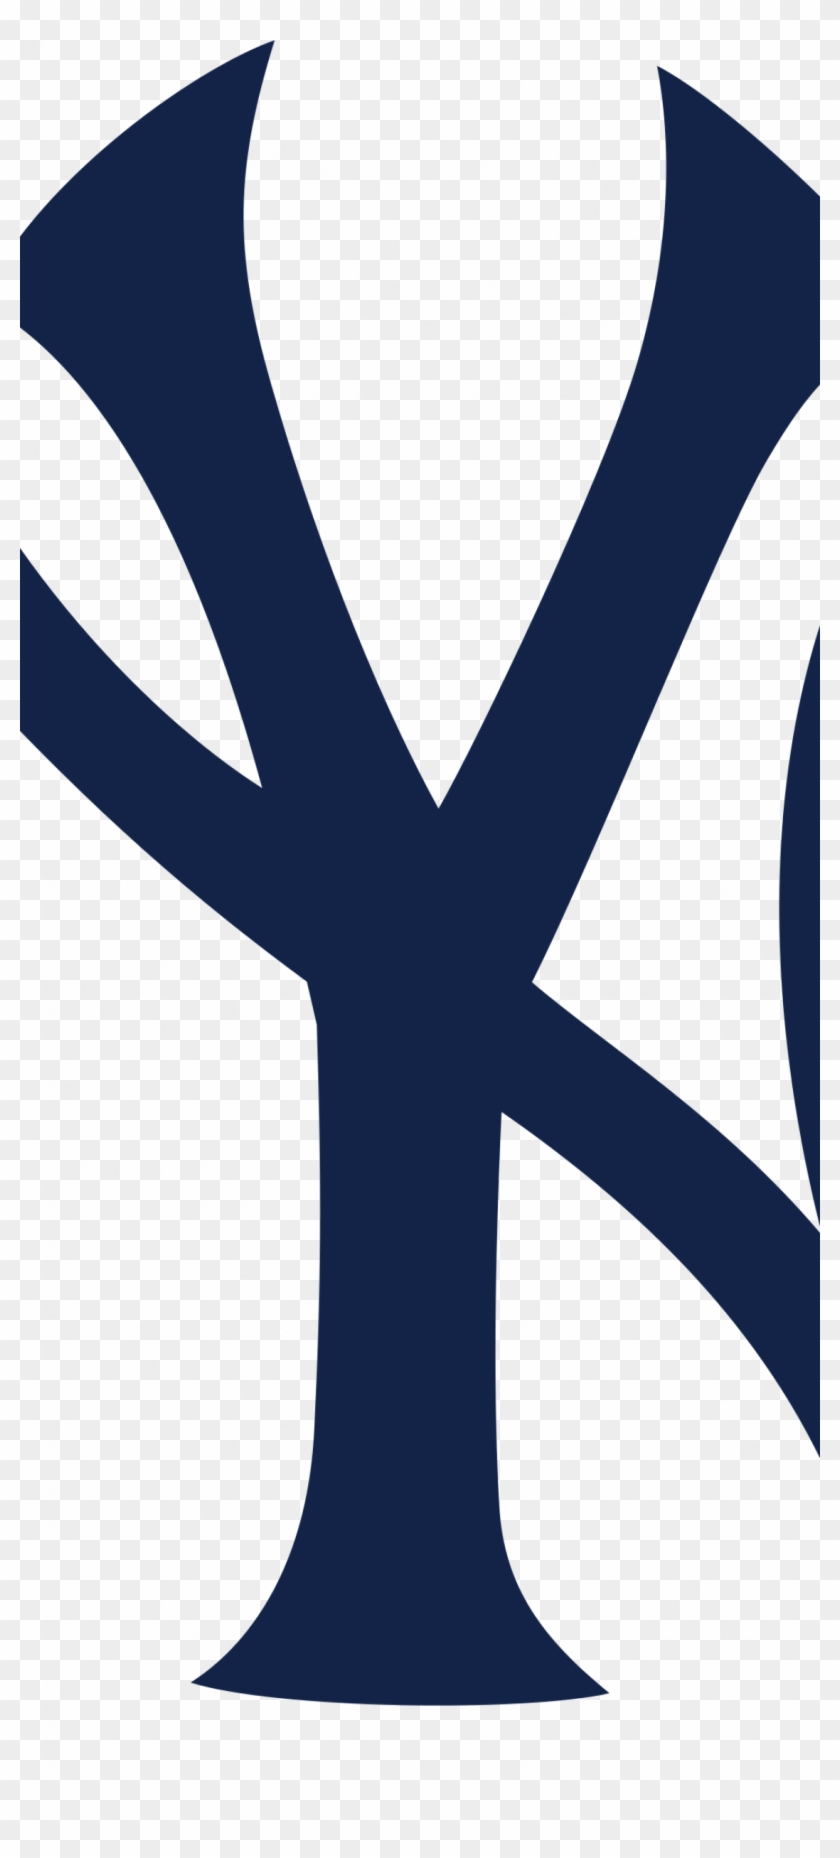 Iphone X Yankees Wallpaper - Iphone X Yankees Wallpaper #1565113